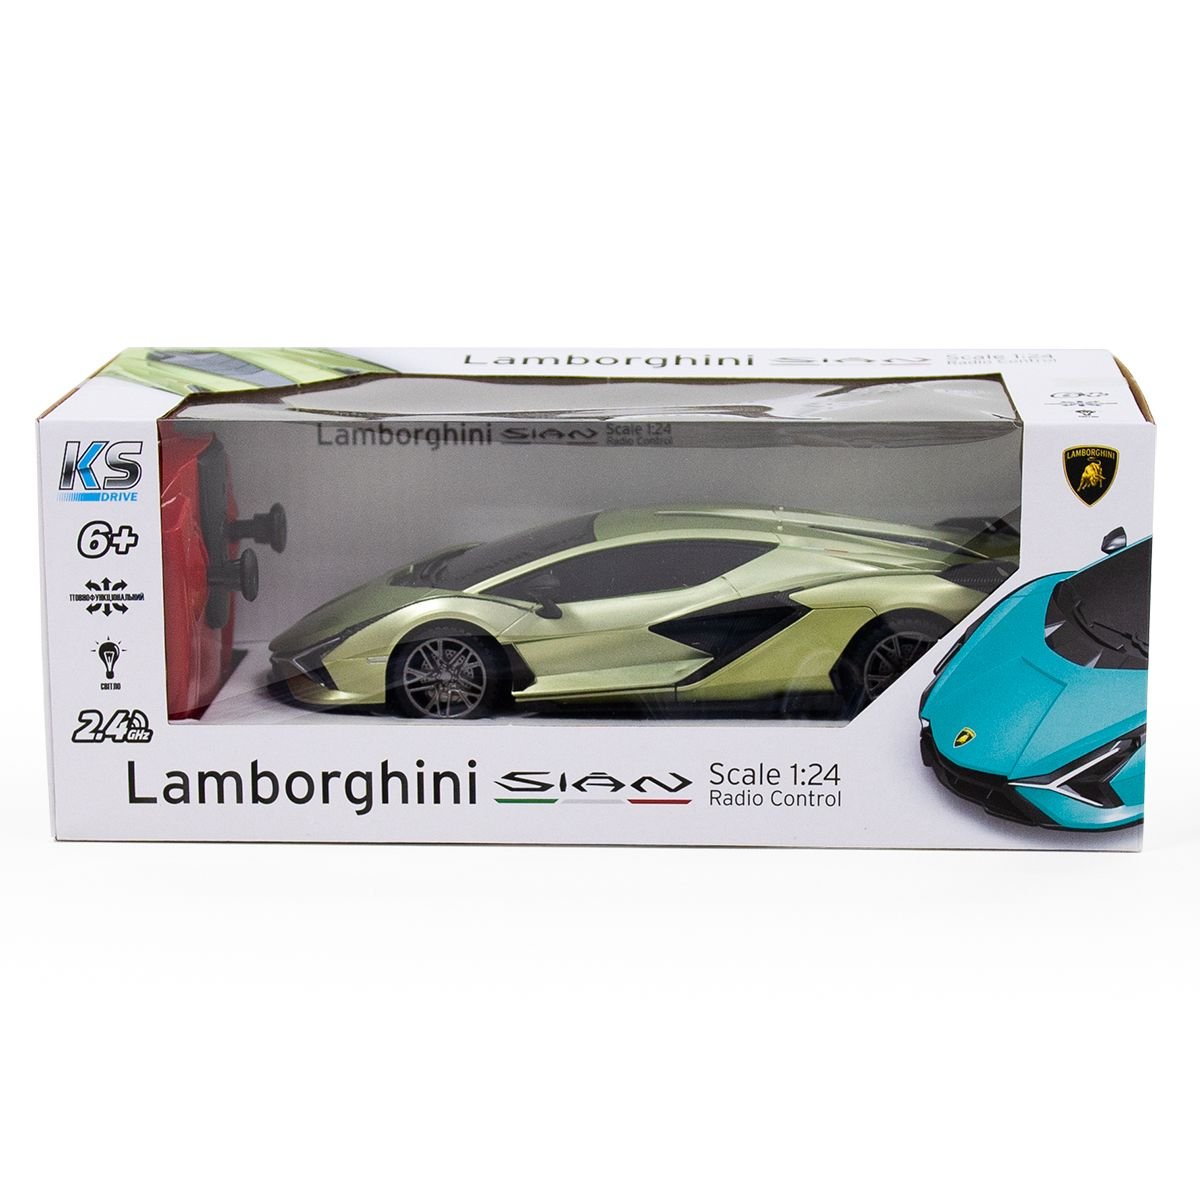 Автомобиль KS Drive на р/у Lamborghini Sian 1:24, 2.4Ghz зеленый (124GLSG) - фото 9